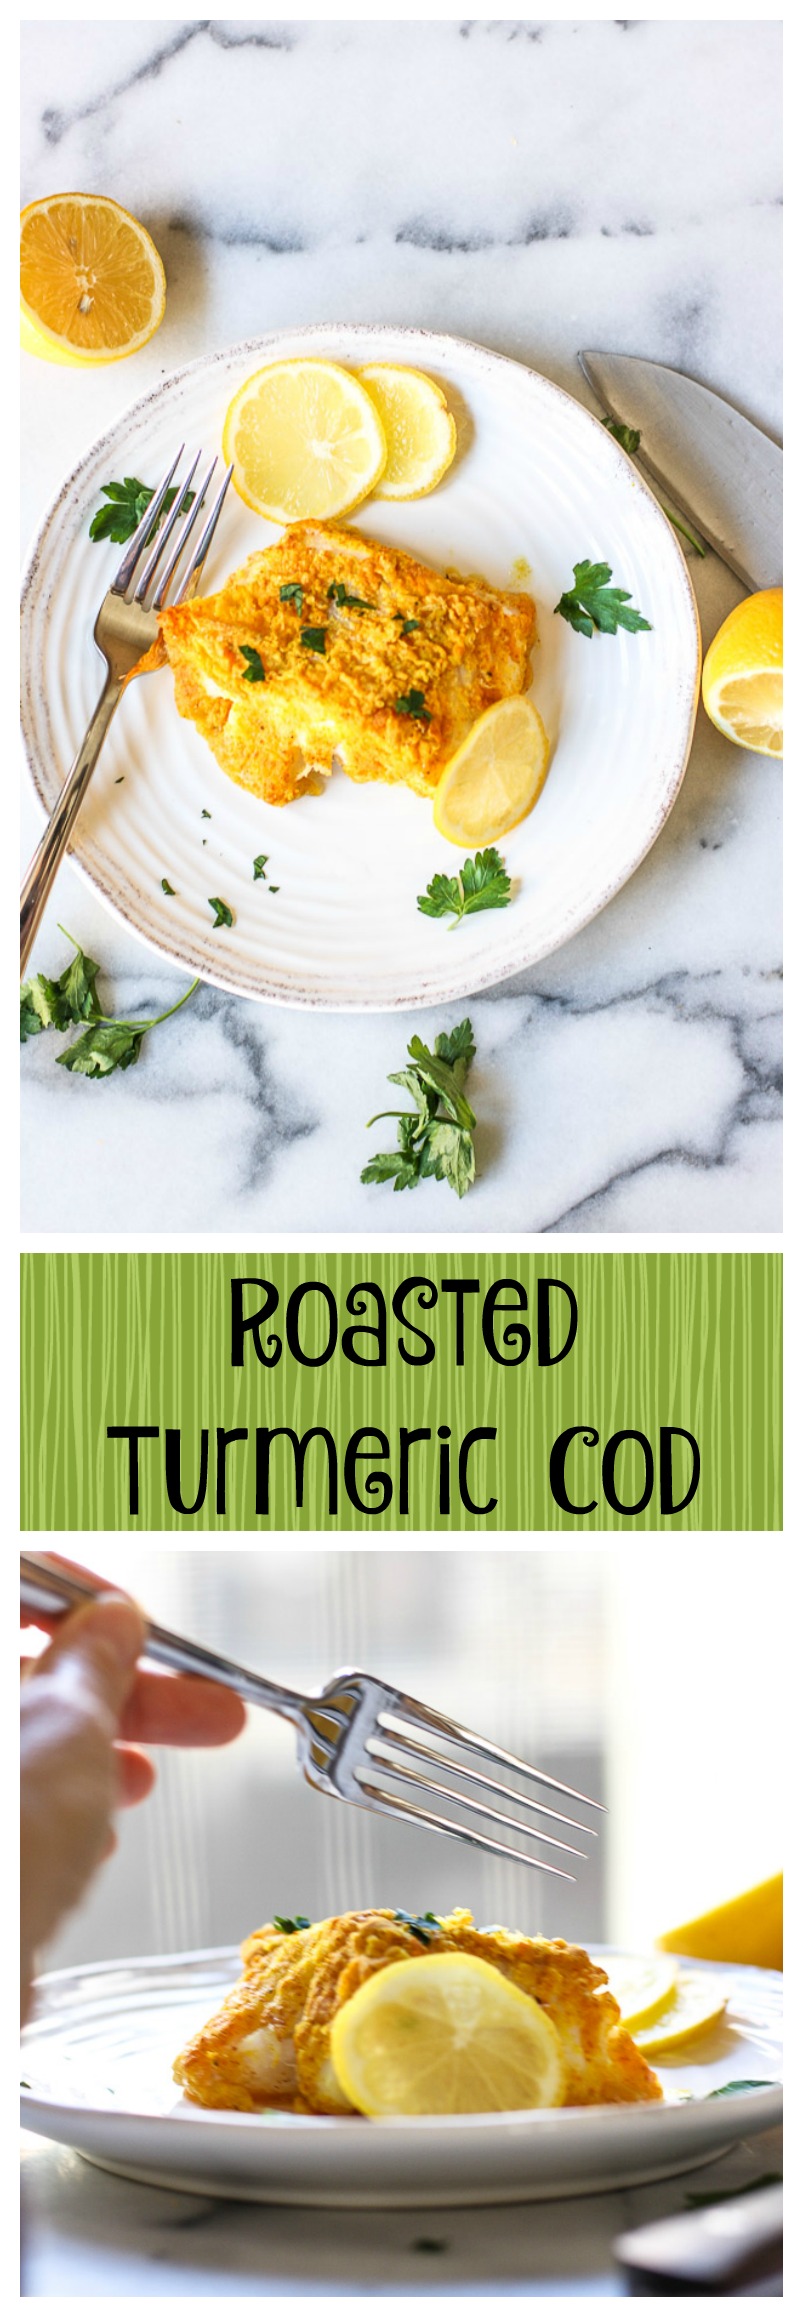 roasted turmeric cod